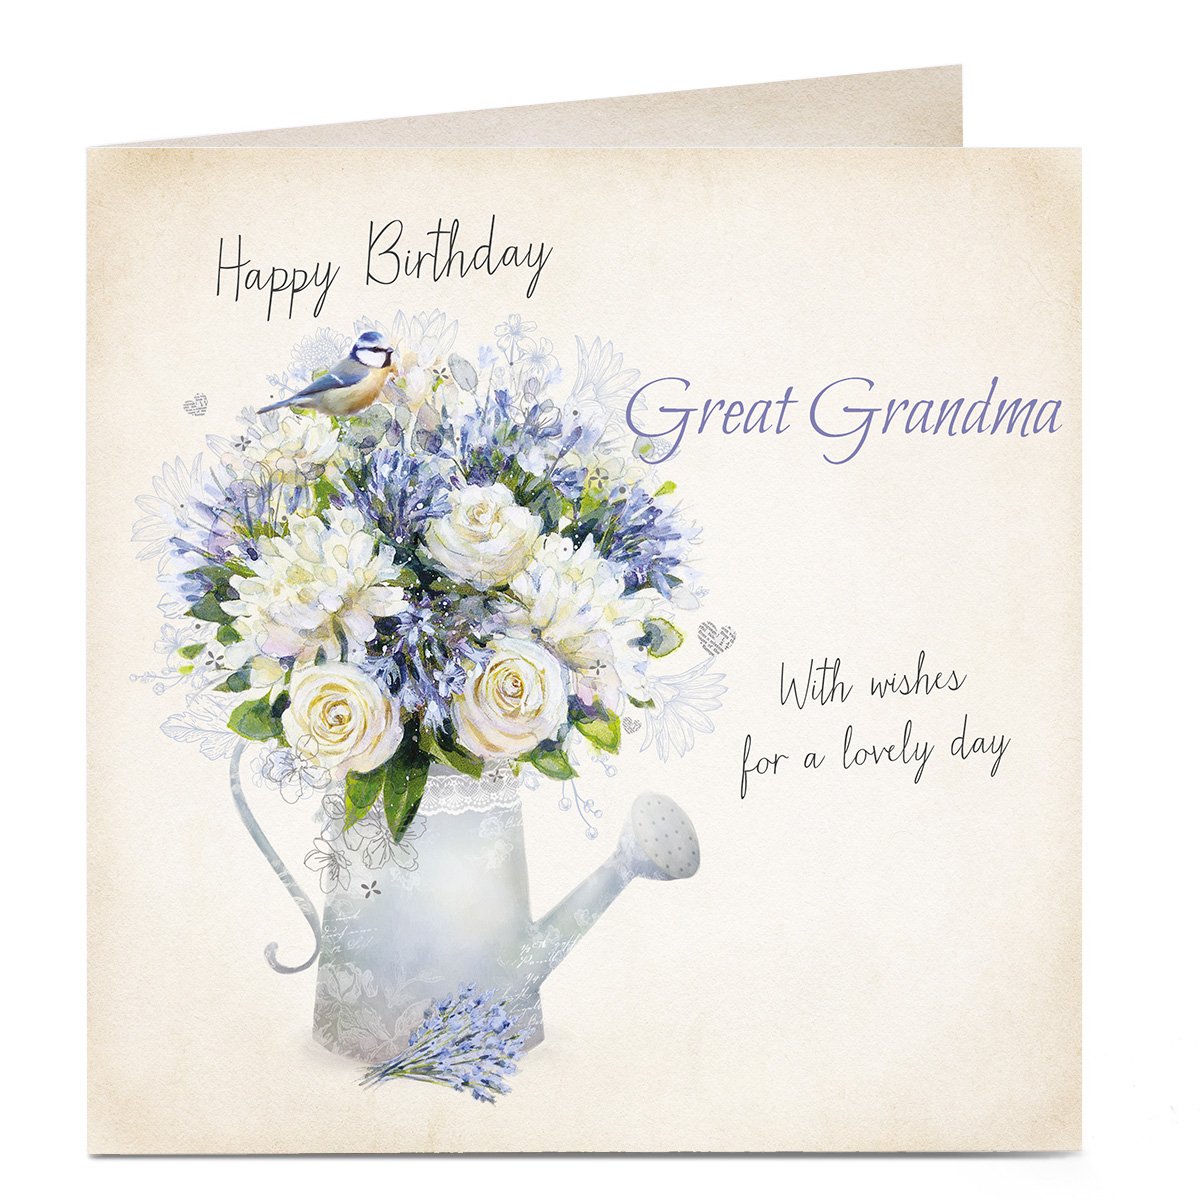 Personalised Birthday Card - Watering Can Flowers, Great Grandma